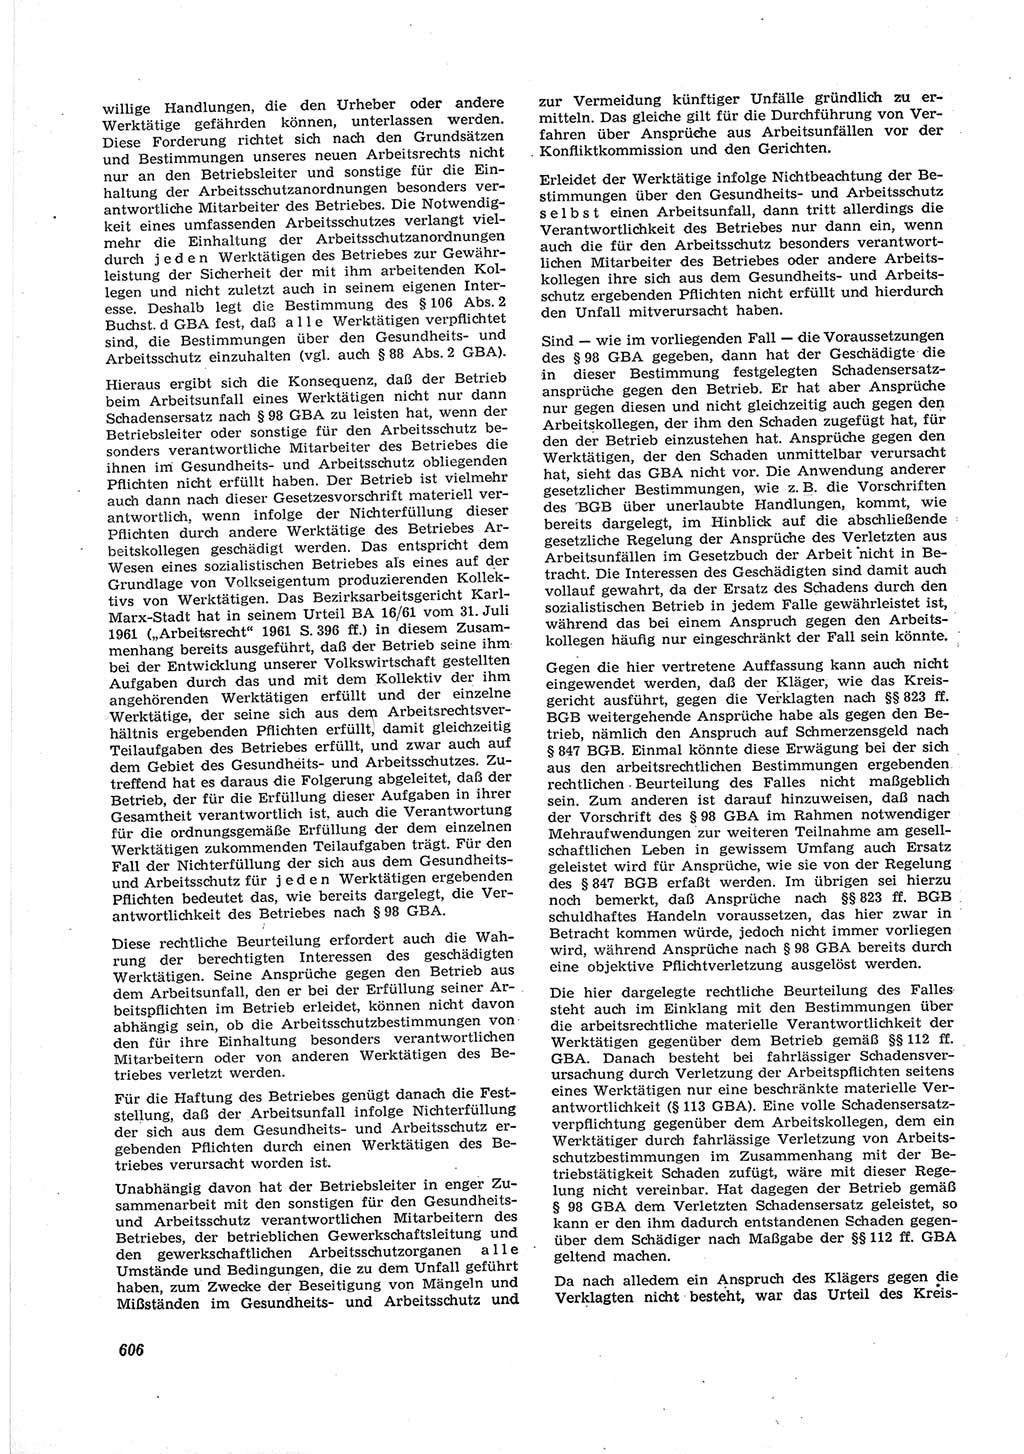 Neue Justiz (NJ), Zeitschrift für Recht und Rechtswissenschaft [Deutsche Demokratische Republik (DDR)], 17. Jahrgang 1963, Seite 606 (NJ DDR 1963, S. 606)